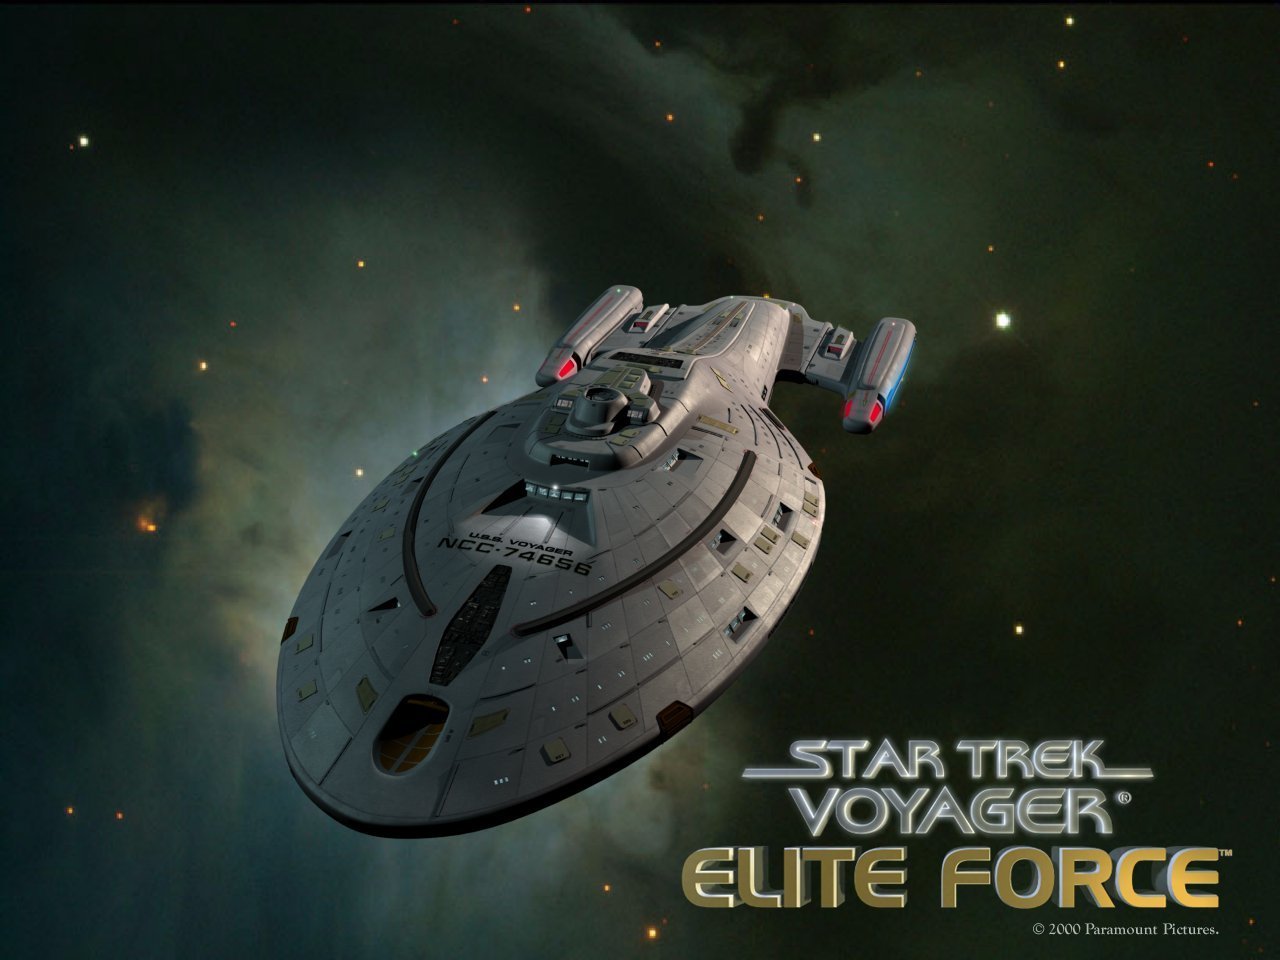 Star Trek Voyager Image Wallpaper Photos